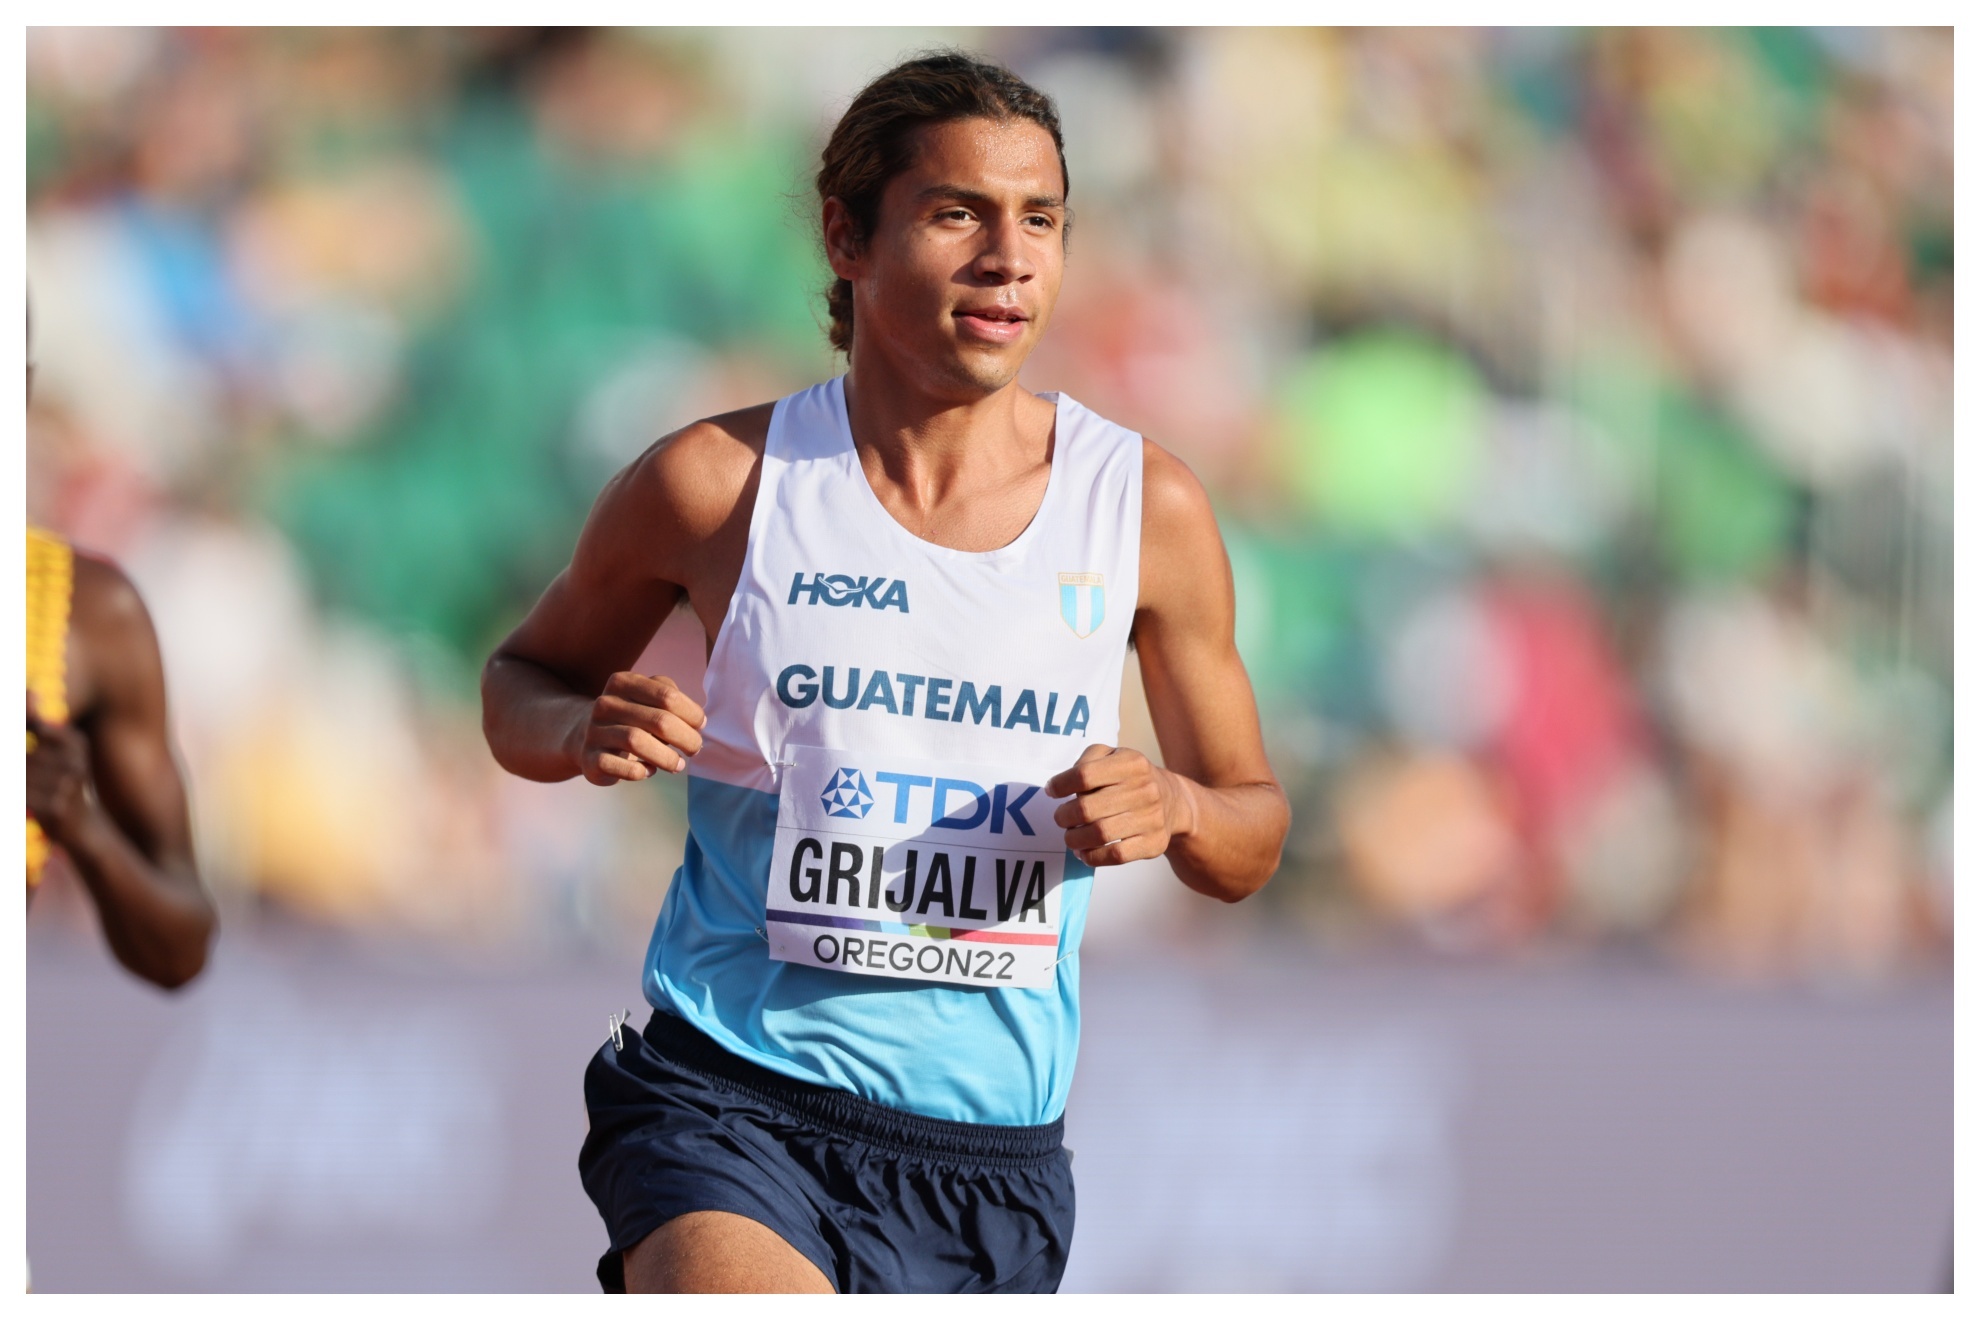 El atleta Luis Grijalva fue cuarto en los 5.000 metros del Mundial de Oregón de 2022. Foto: Getty Images